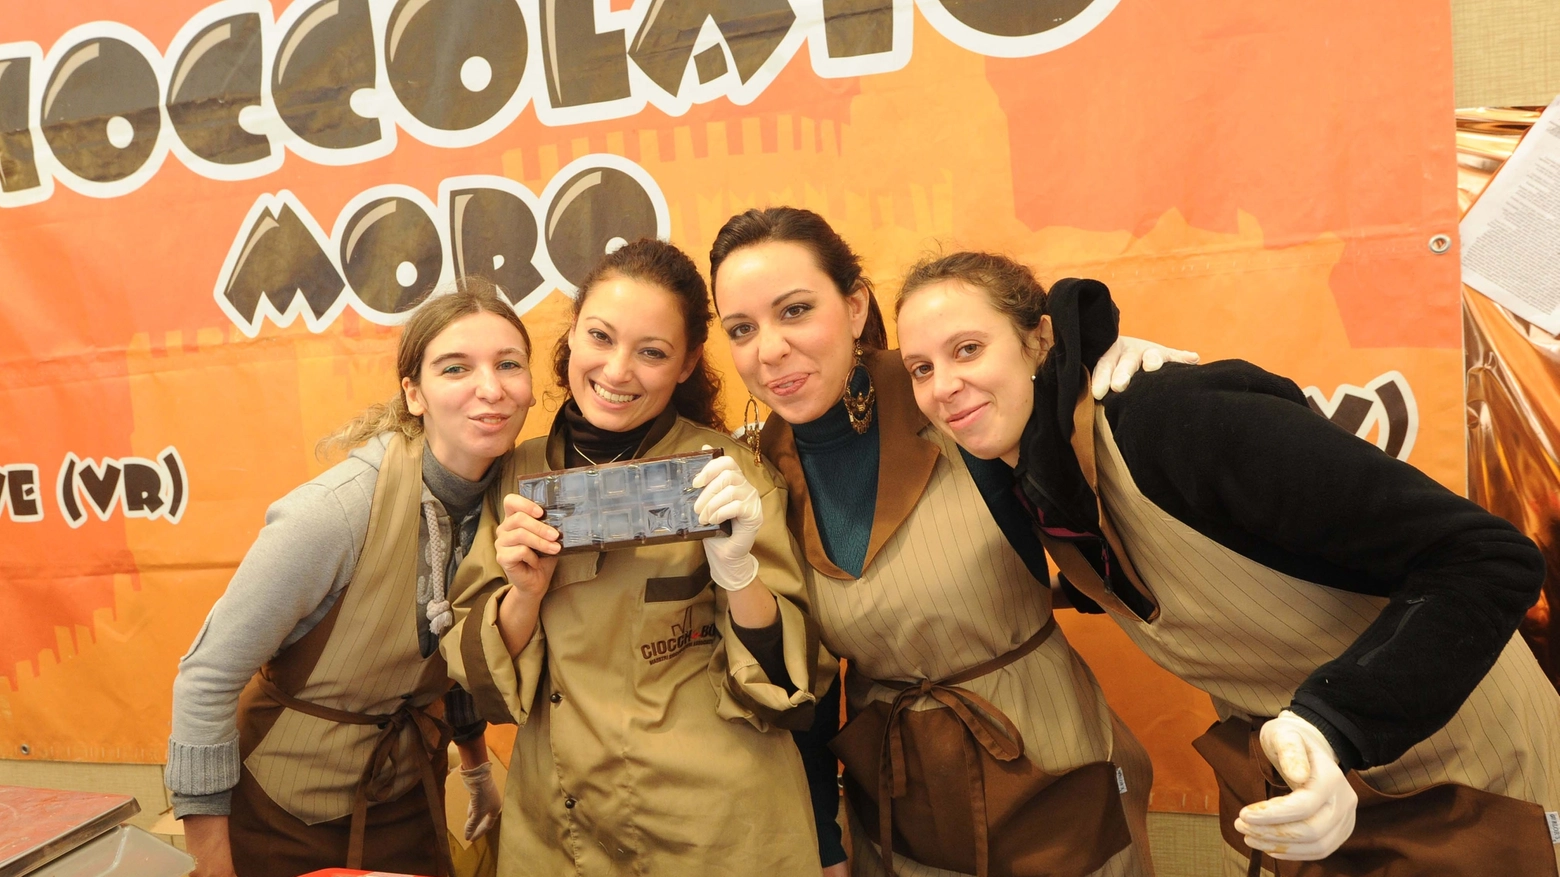 Uno degli stand all'edizione 2013 del Cioccoshow (foto Schicchi)